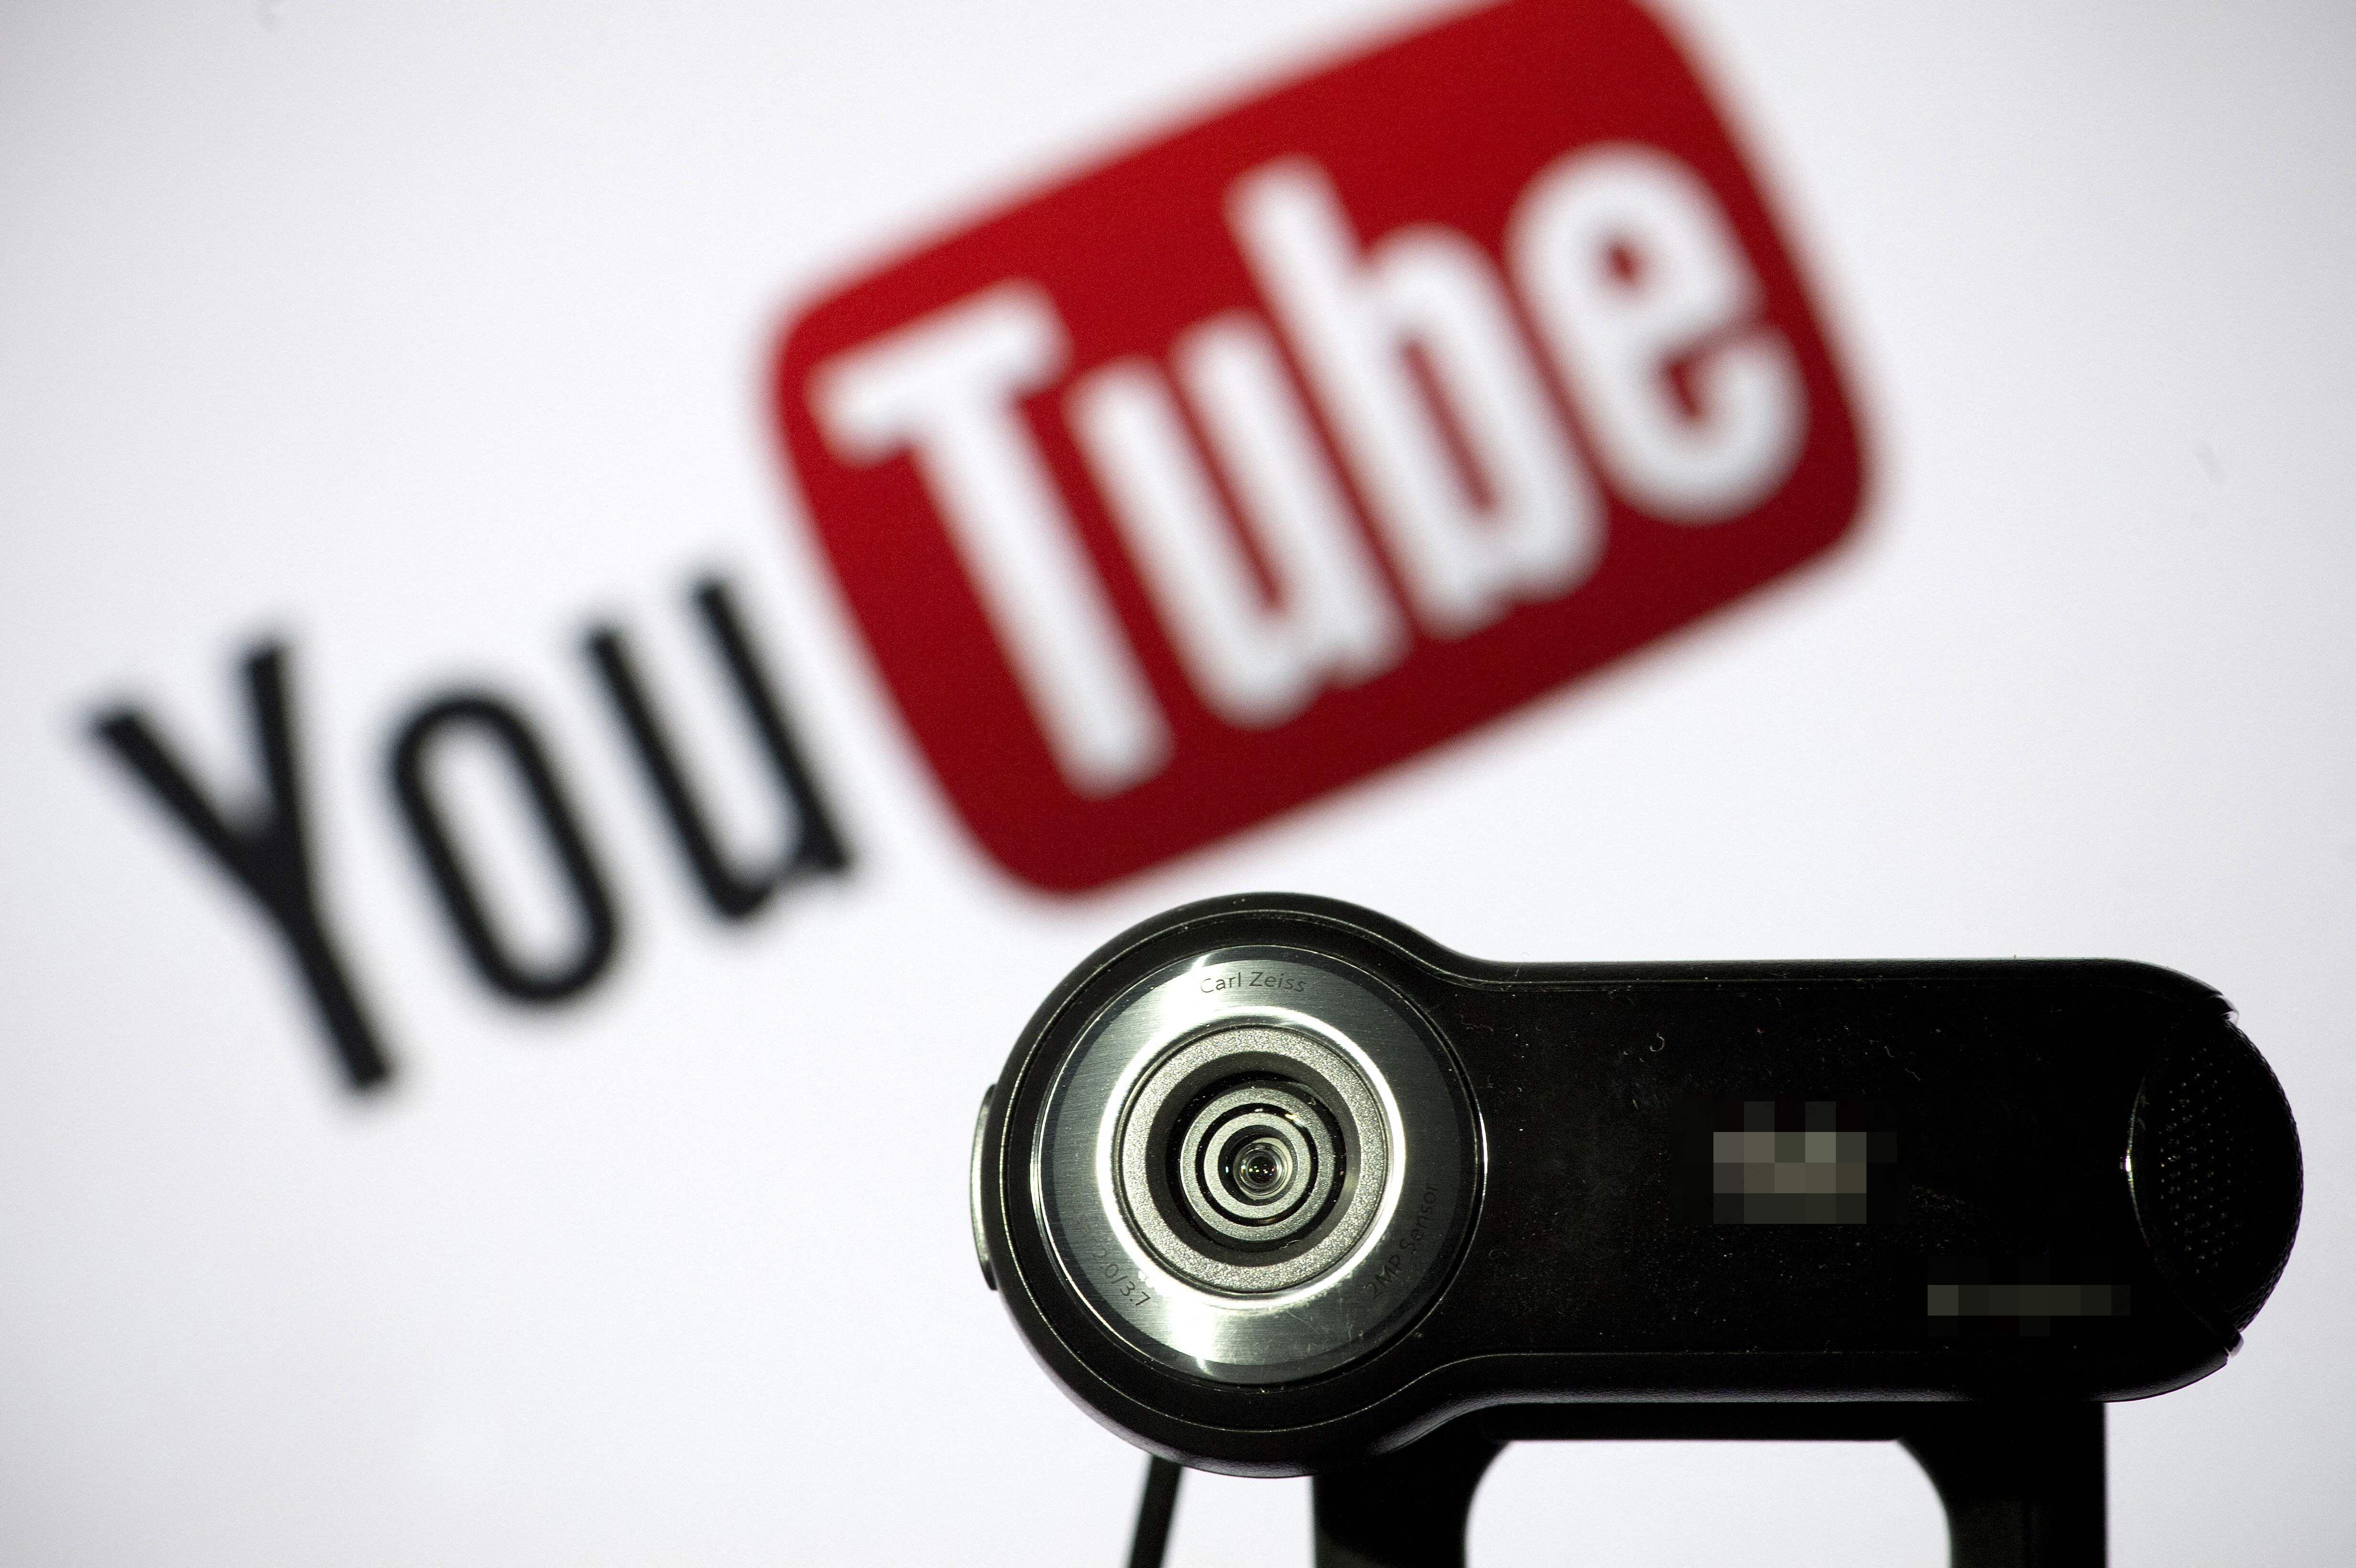 Los creadores de contenido en YouTube mantienen a la red social entre las principales y más usadas, especialmente entre los jóvenes.